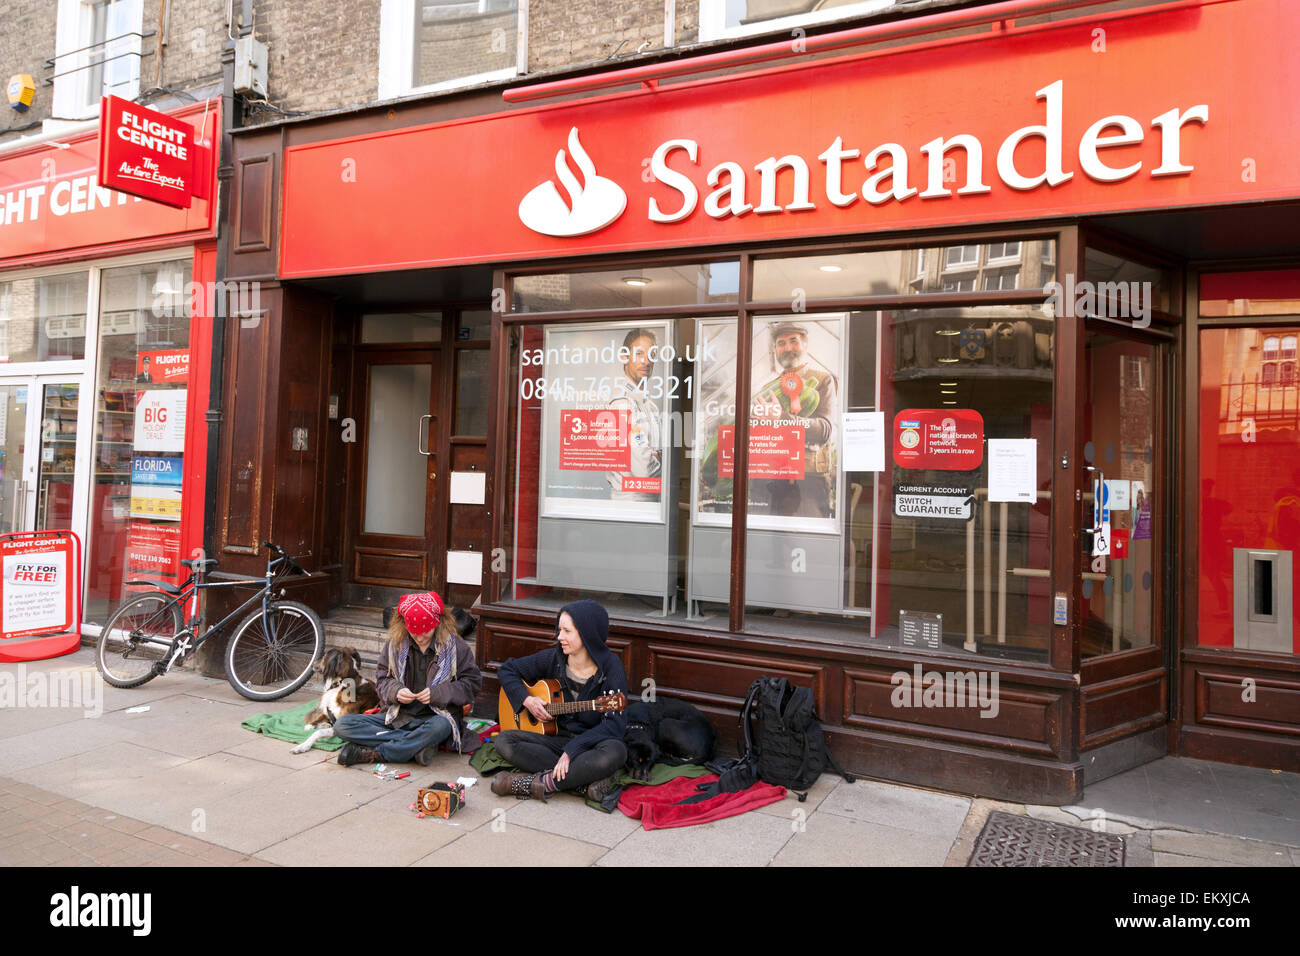 Les amuseurs publics aux spectacles de l'extérieur de la Banque Santander, un exemple de la notion de pays riches et pauvres, Sidney Street, Cambridge UK Banque D'Images